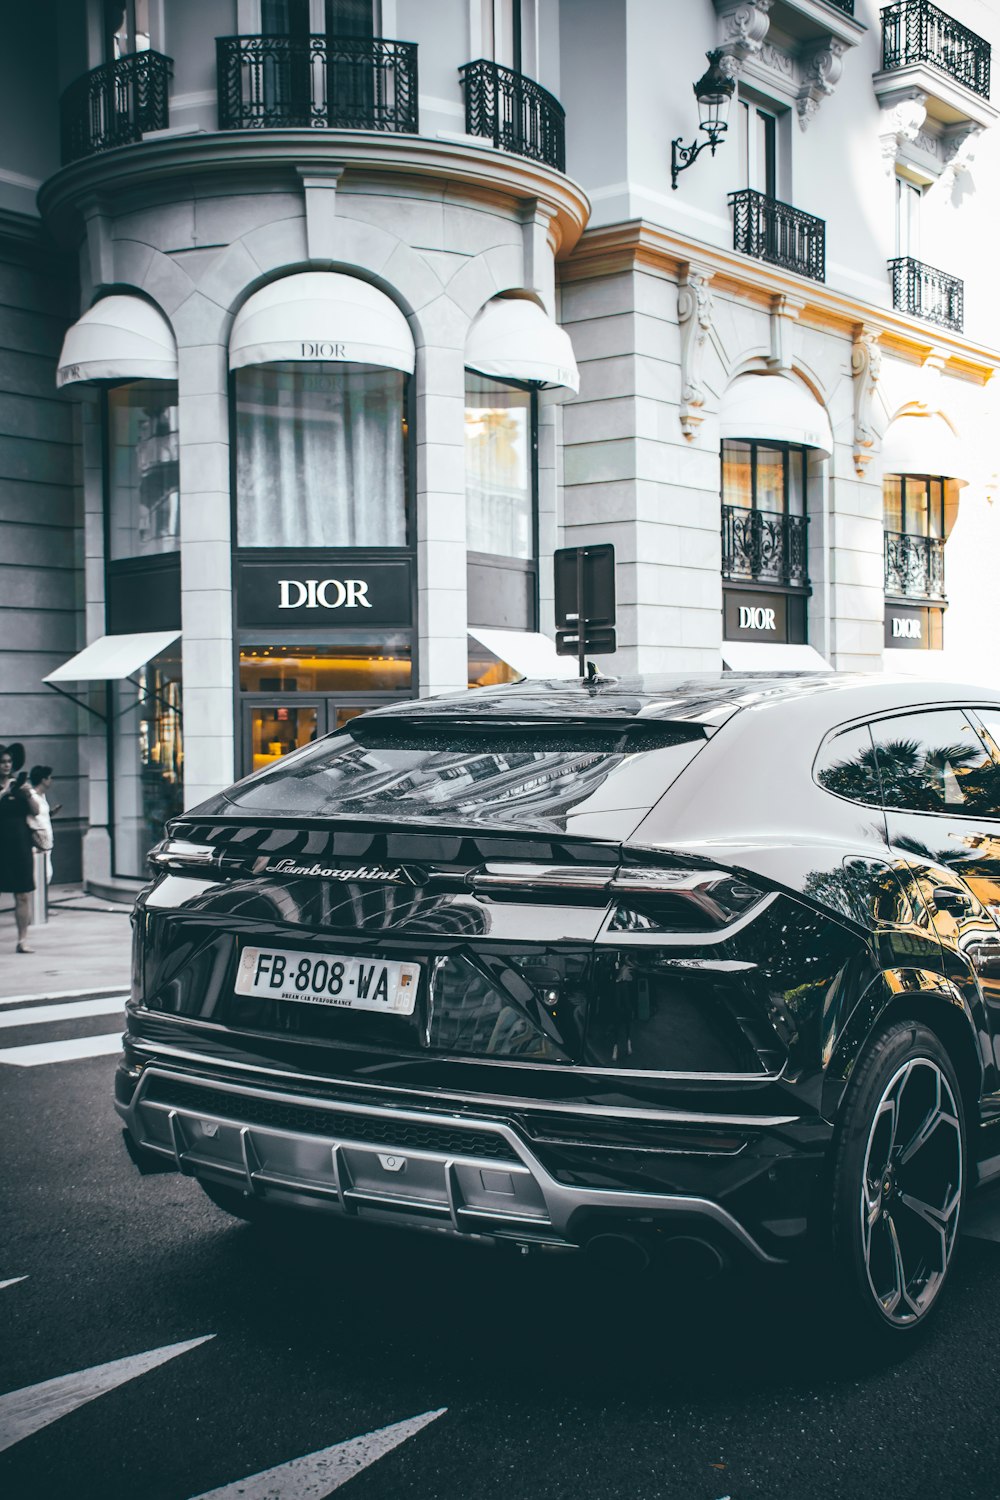 foto do carro preto em toda a loja Dior